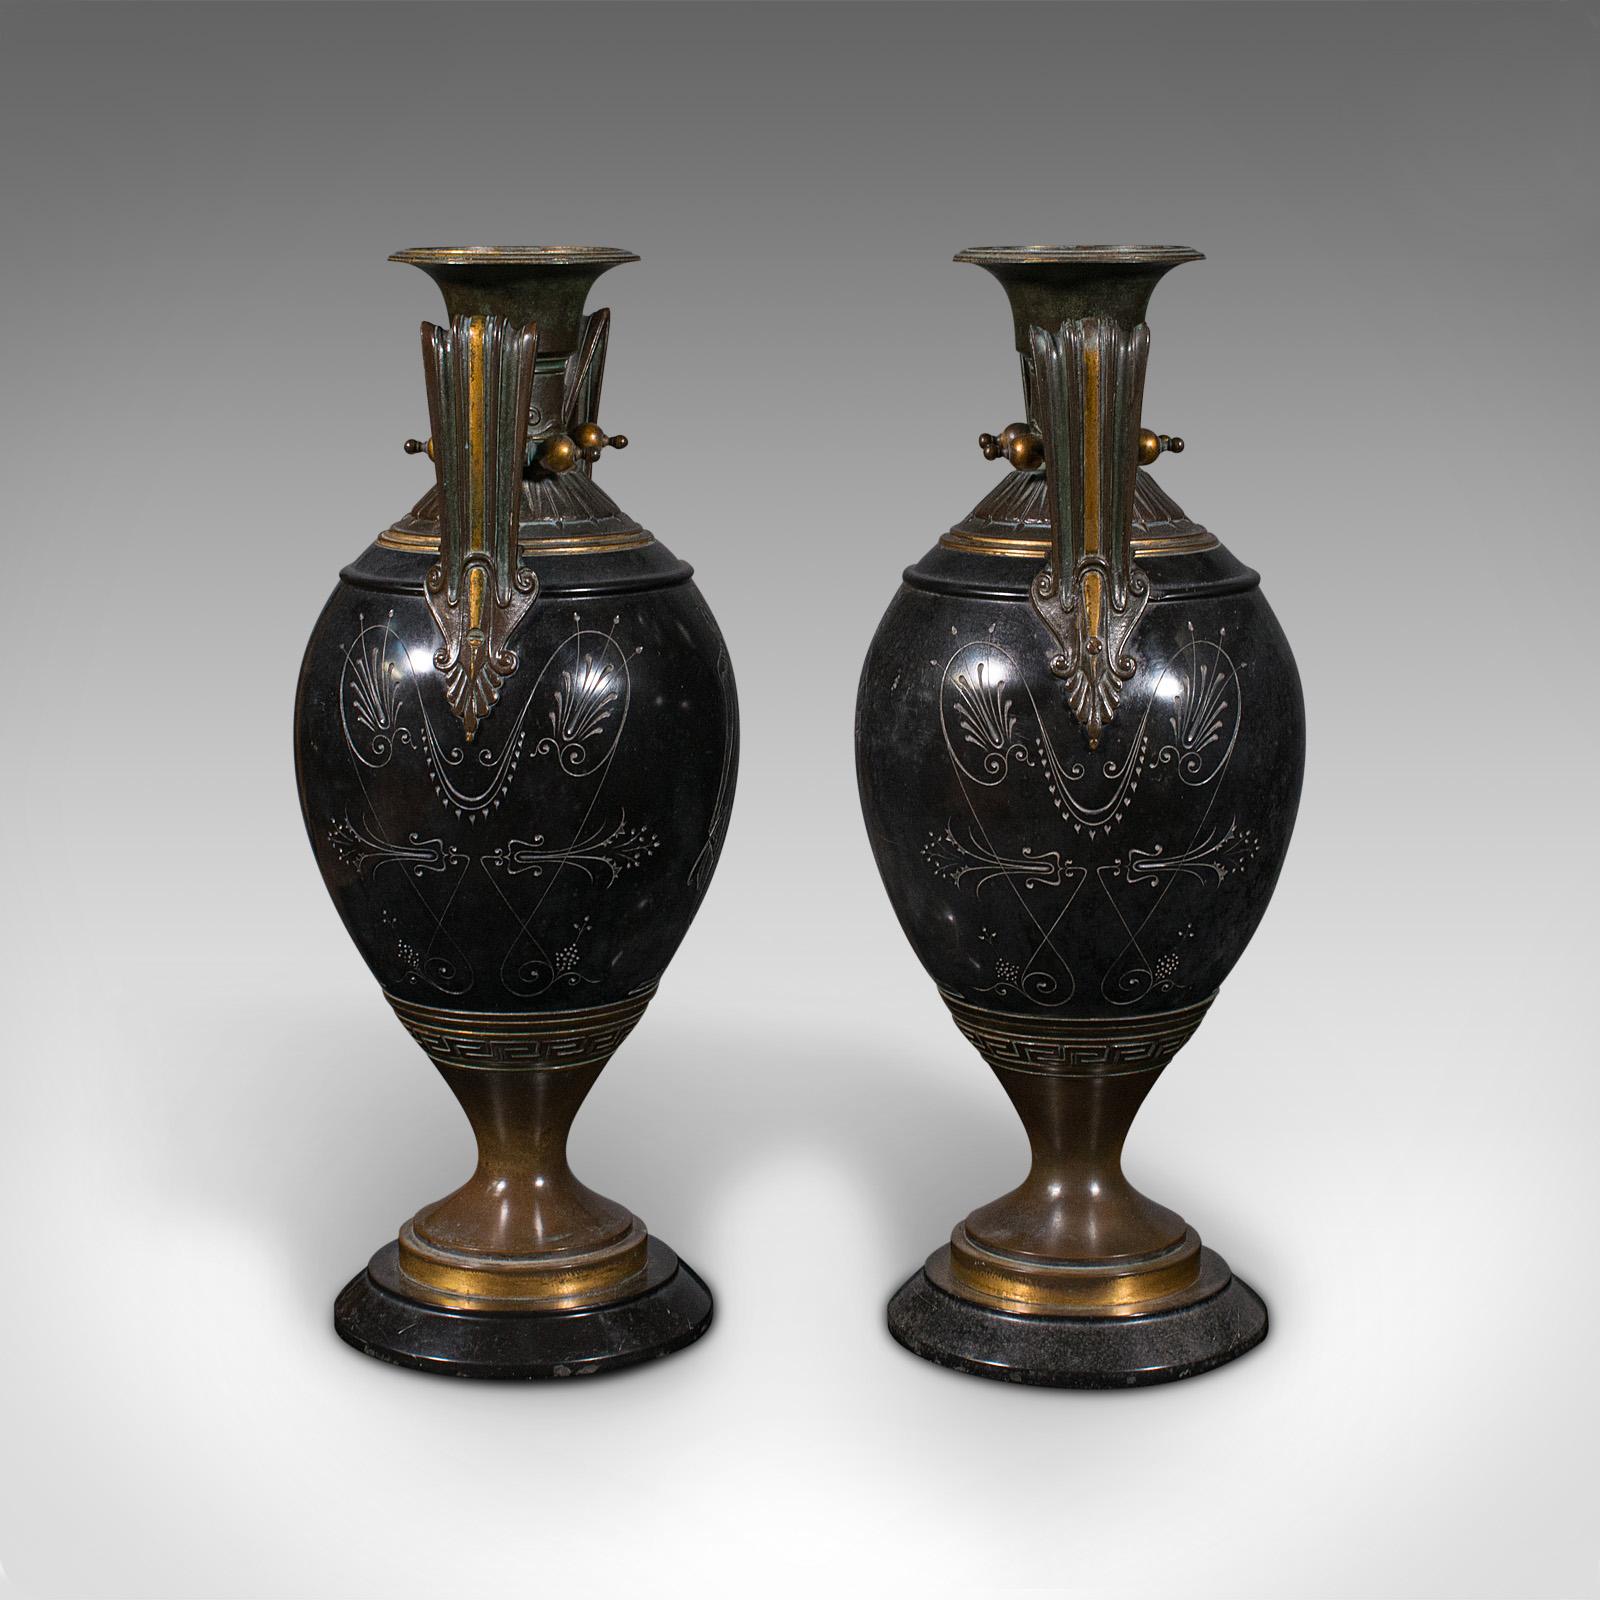 19th Century Pair of Antique Display Vases, Italian, Marble, Decorative Urn, Grand Tour, 1870